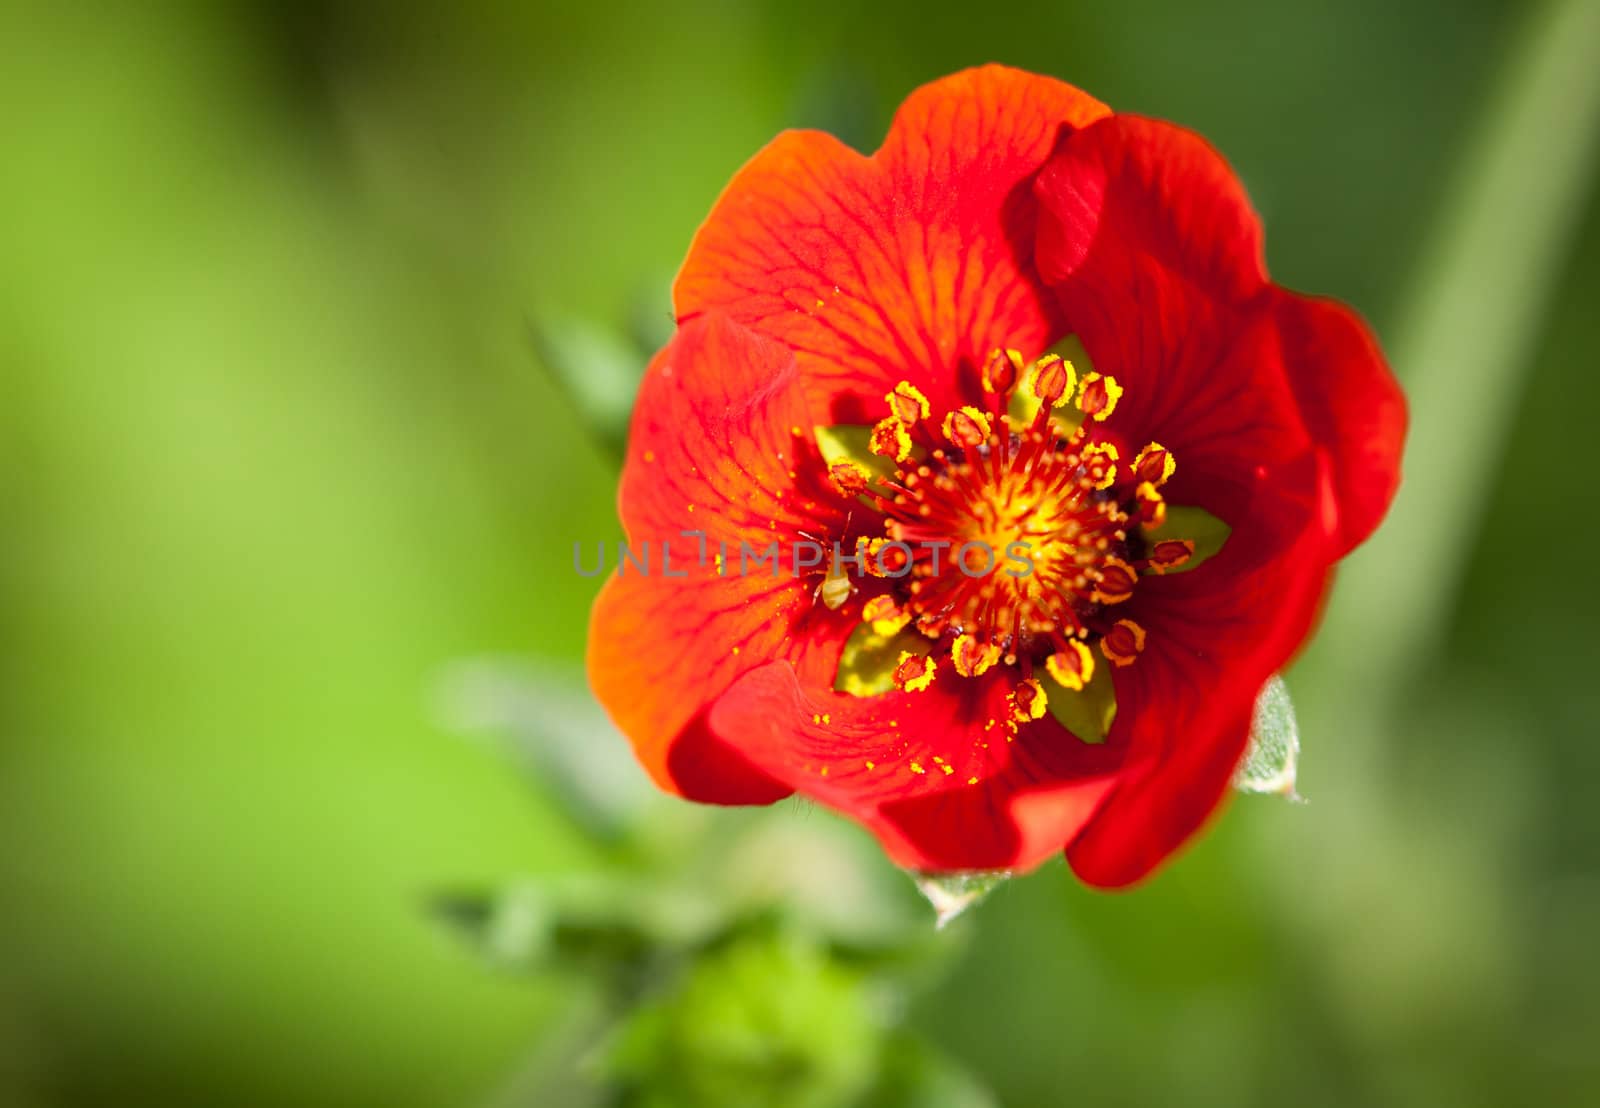 Red poppy flower by Jaykayl